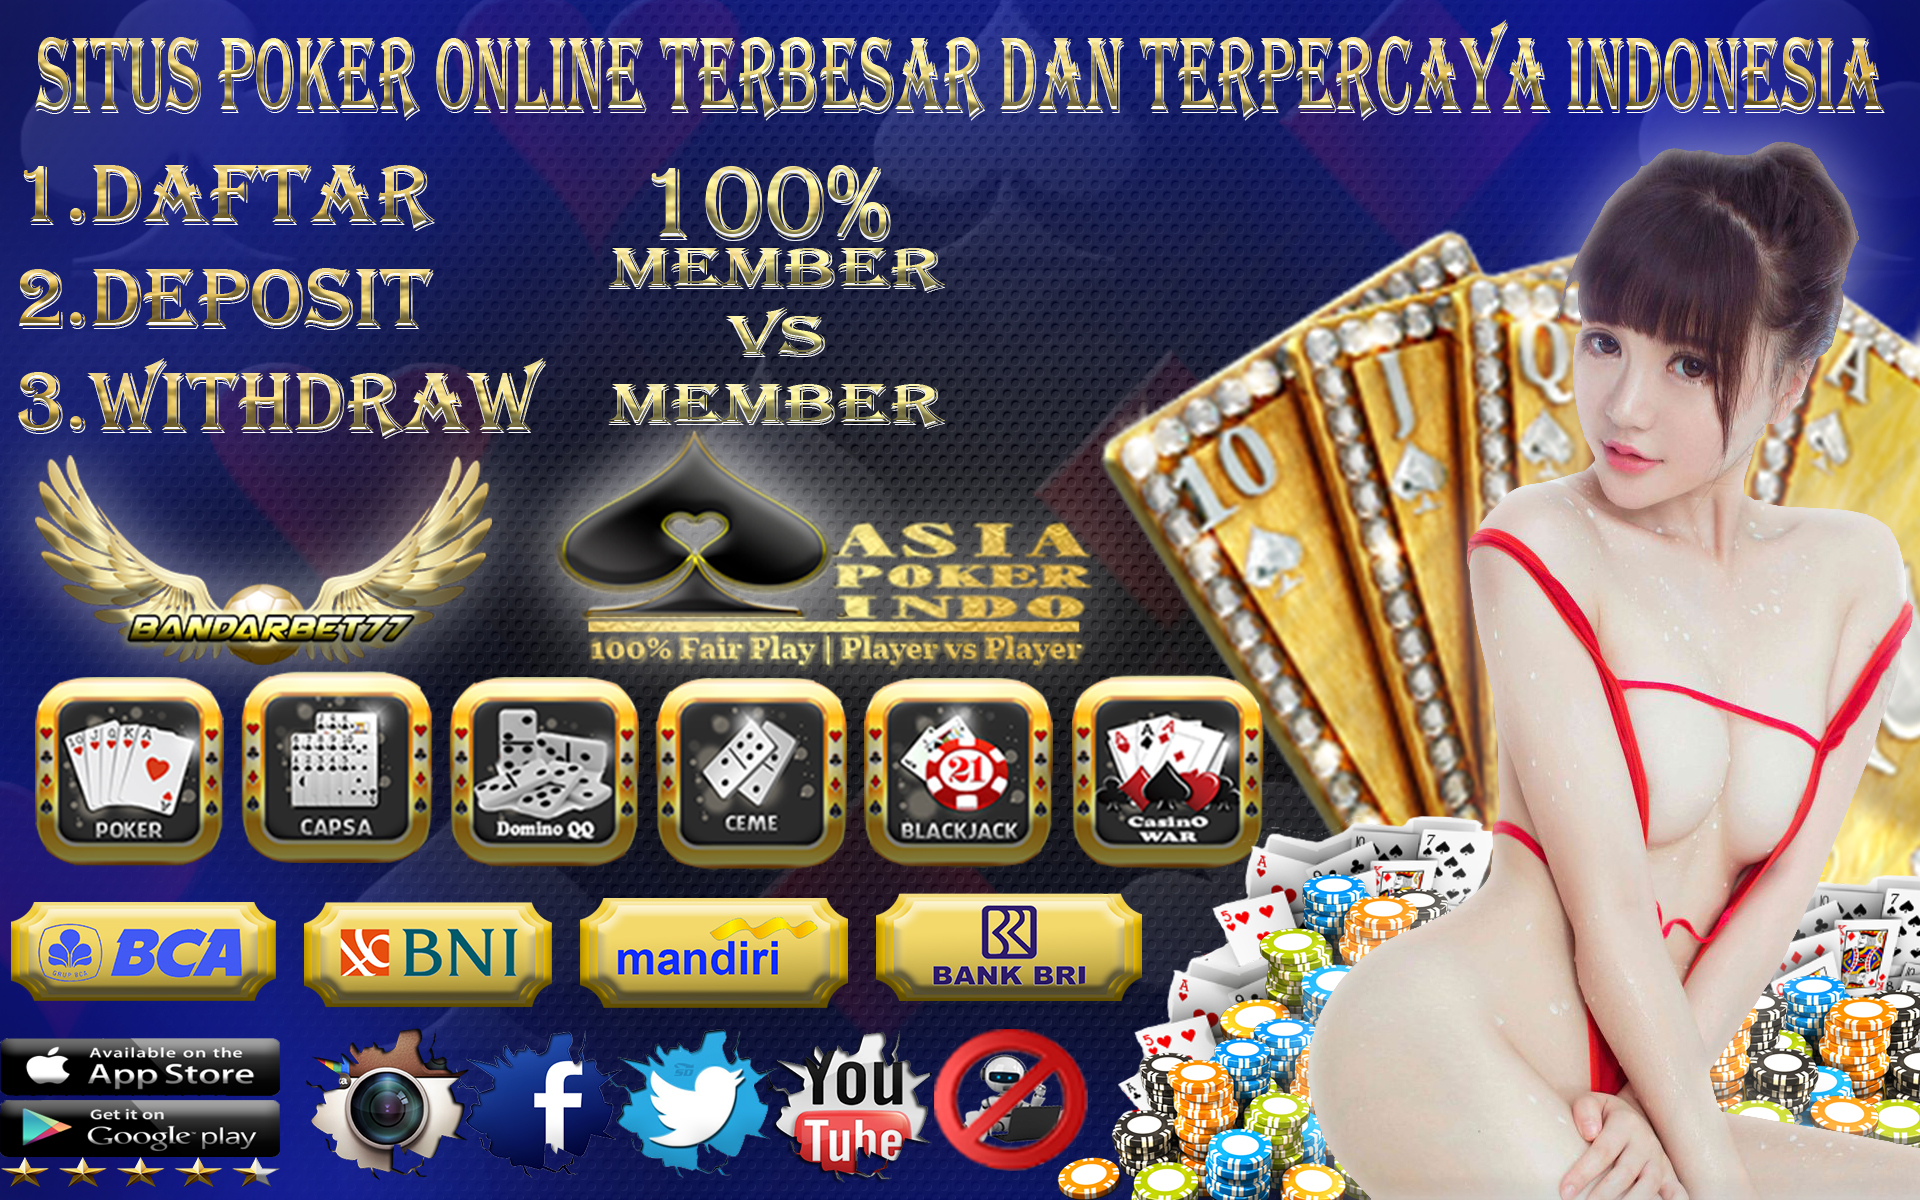 Situs Poker Online 100% Member Vs Member Indonesia